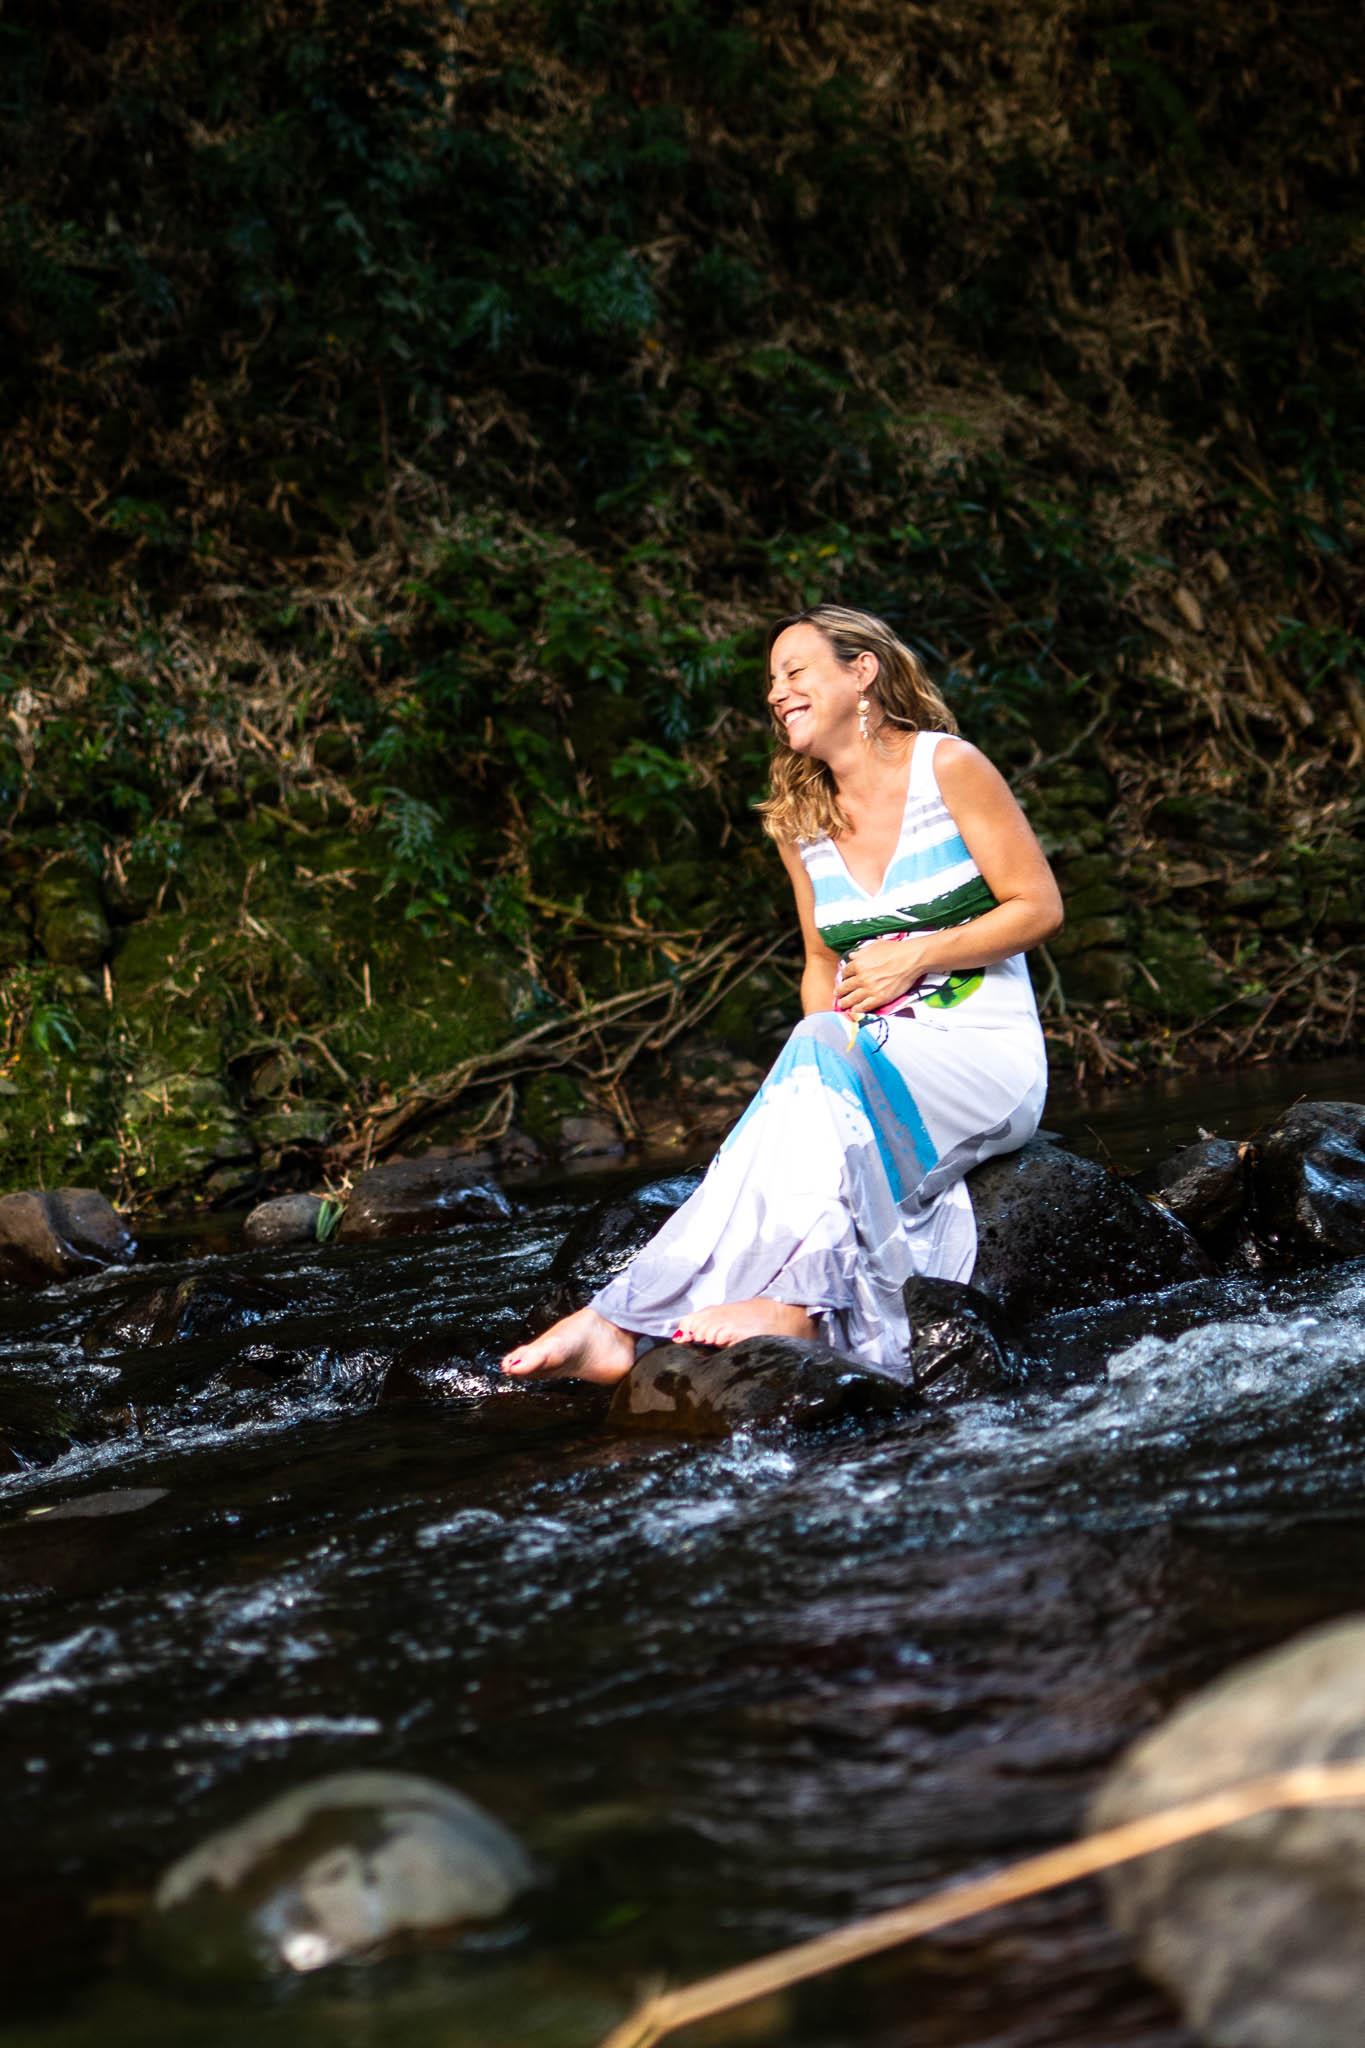 femme riant dans une rivière